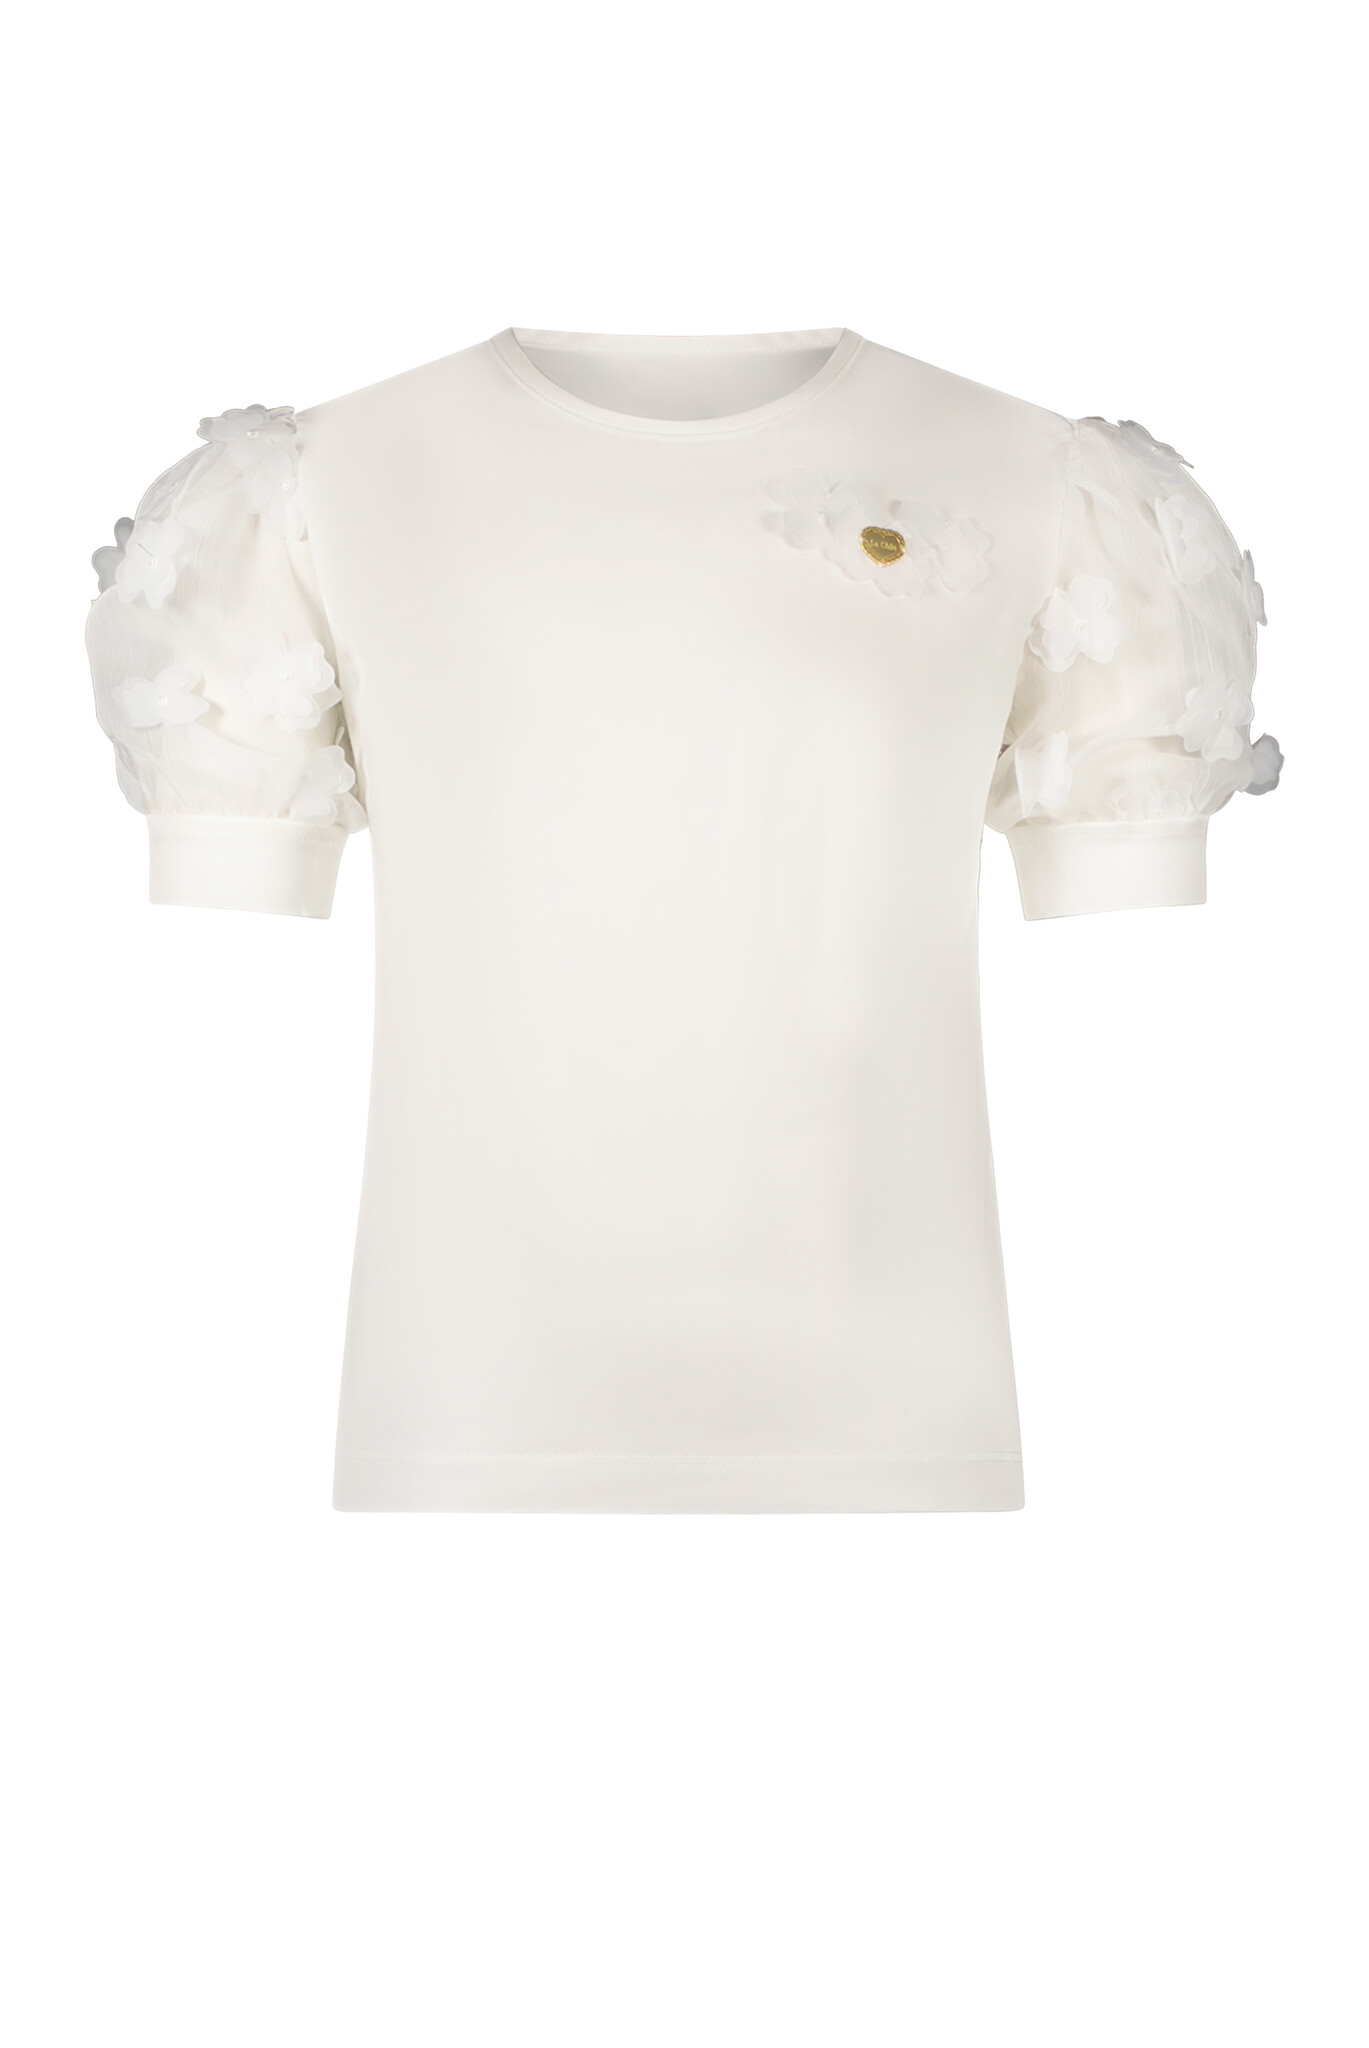 Le Chic C312-5400 Meisjes T-shirt - Off White - Maat 128